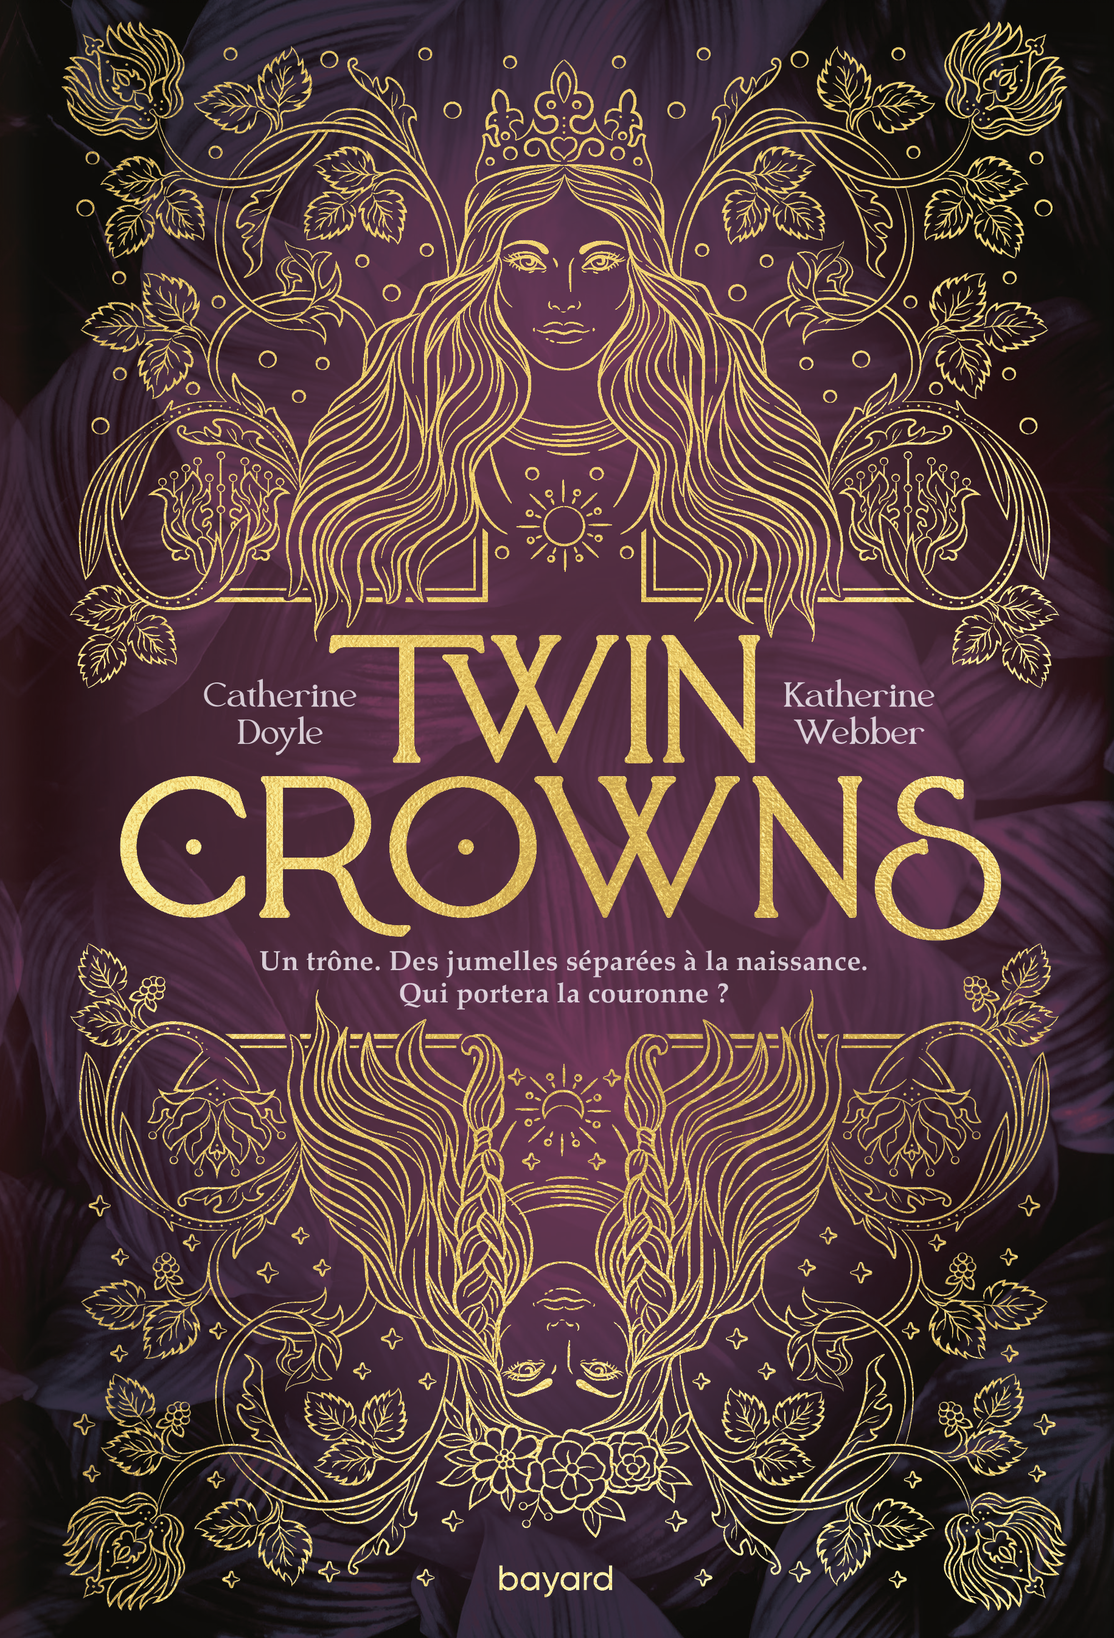 Image de l'article « Twin Crowns de Catherine Doyle et Katherine Webber »